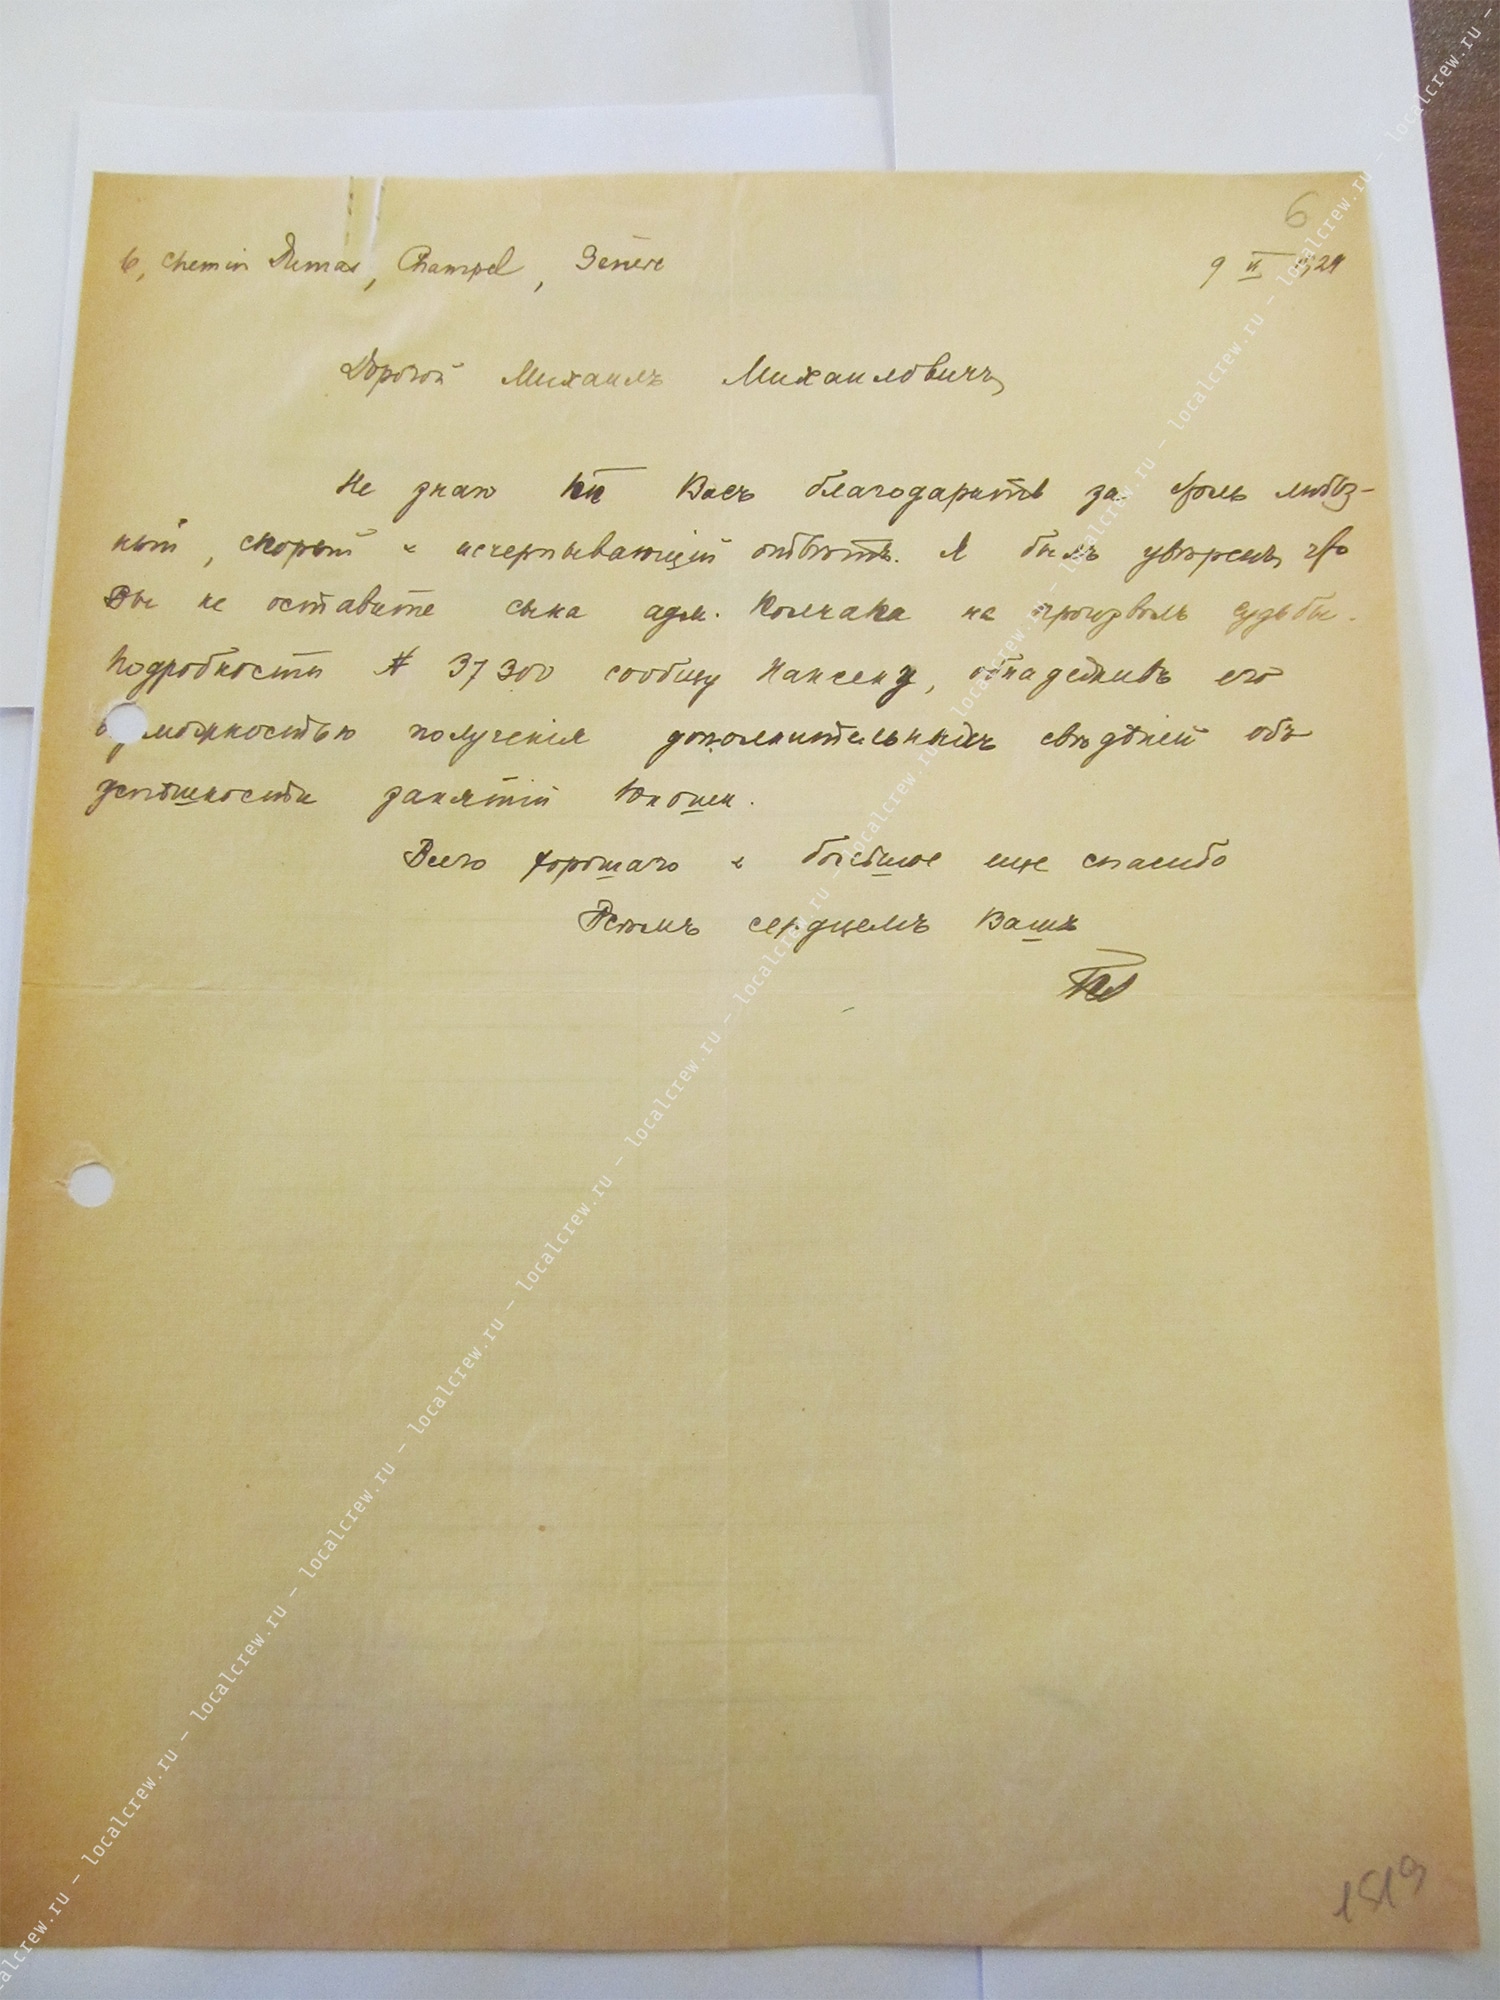 Колчак-младший, его анкета и письмо Гулькевича, хлопотавшего от имени вдовы Колчака.